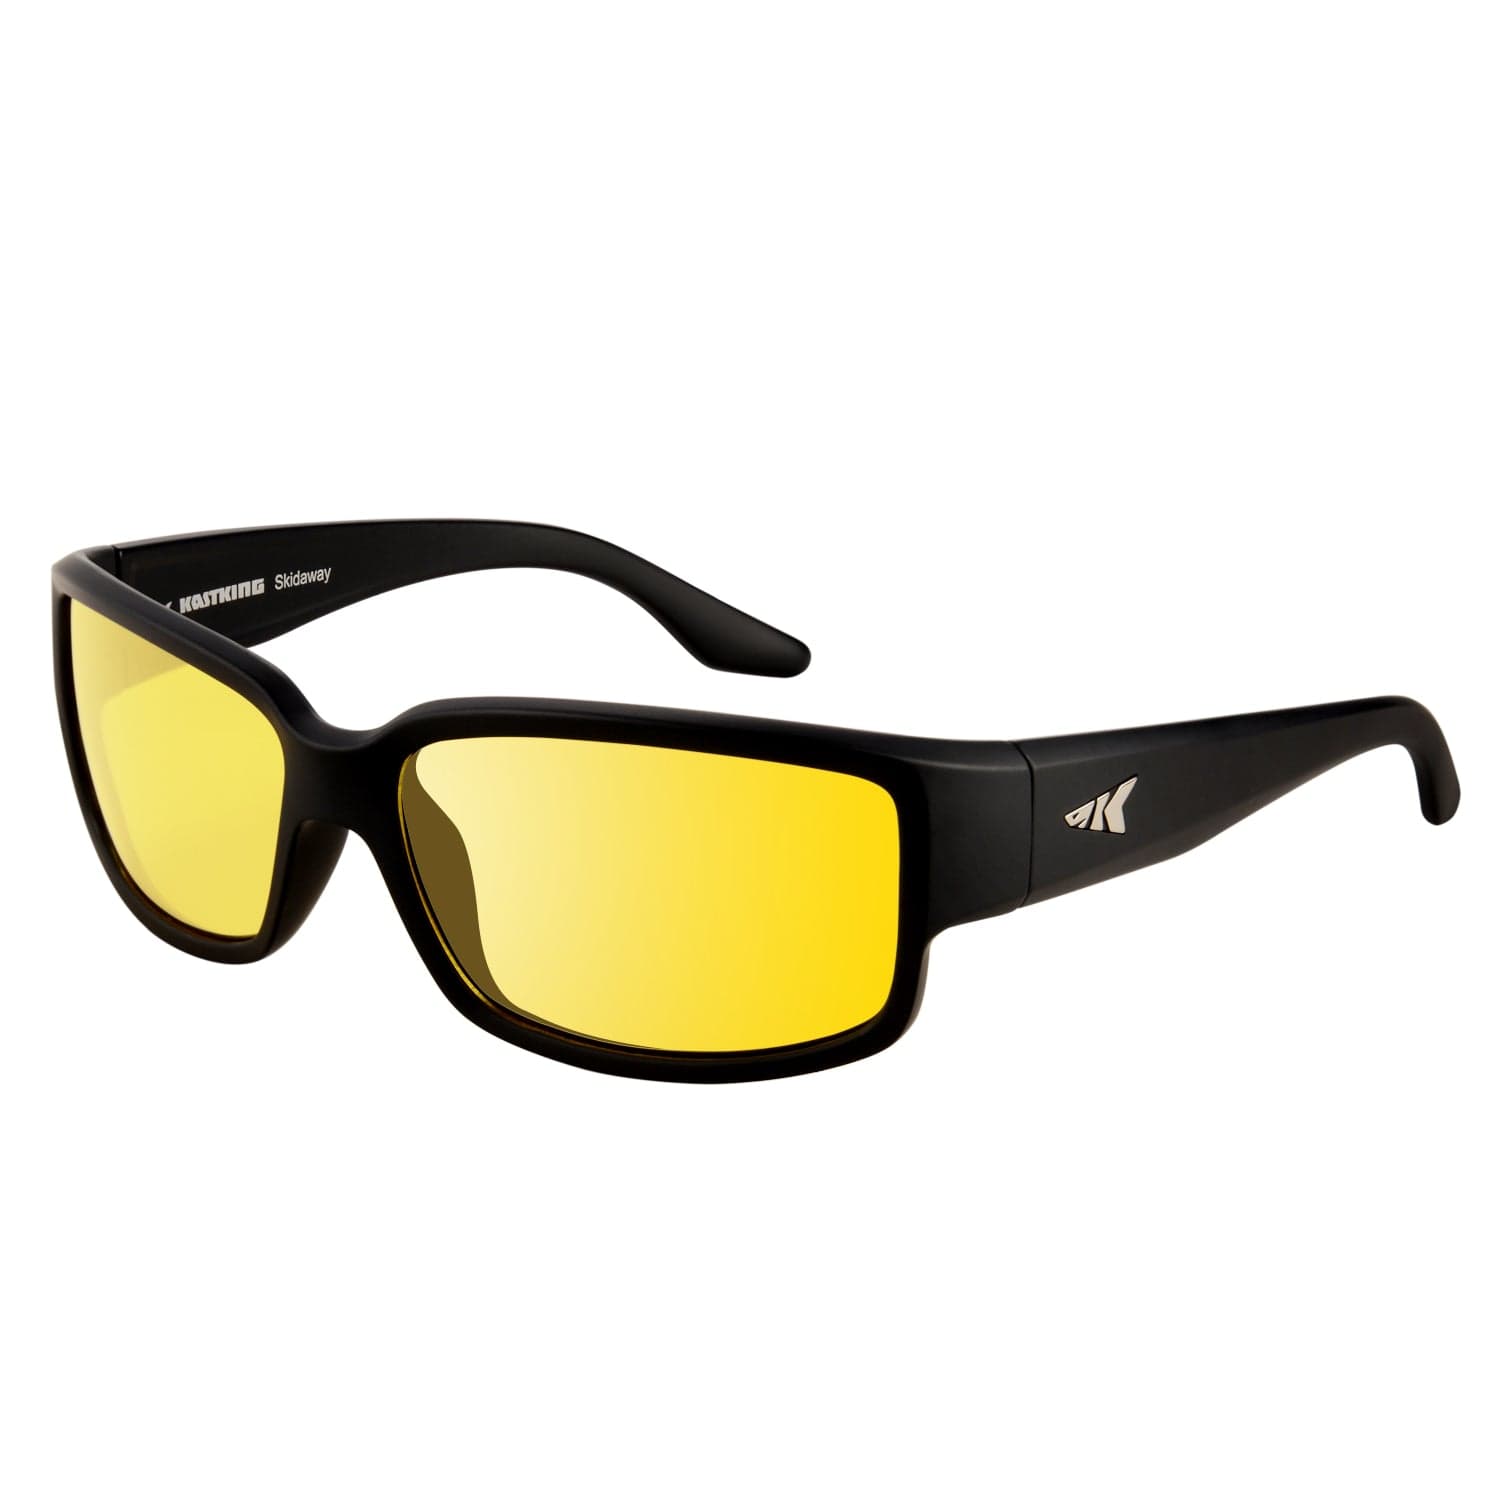 Best Polarized Sunglasses For Fishing – KastKing